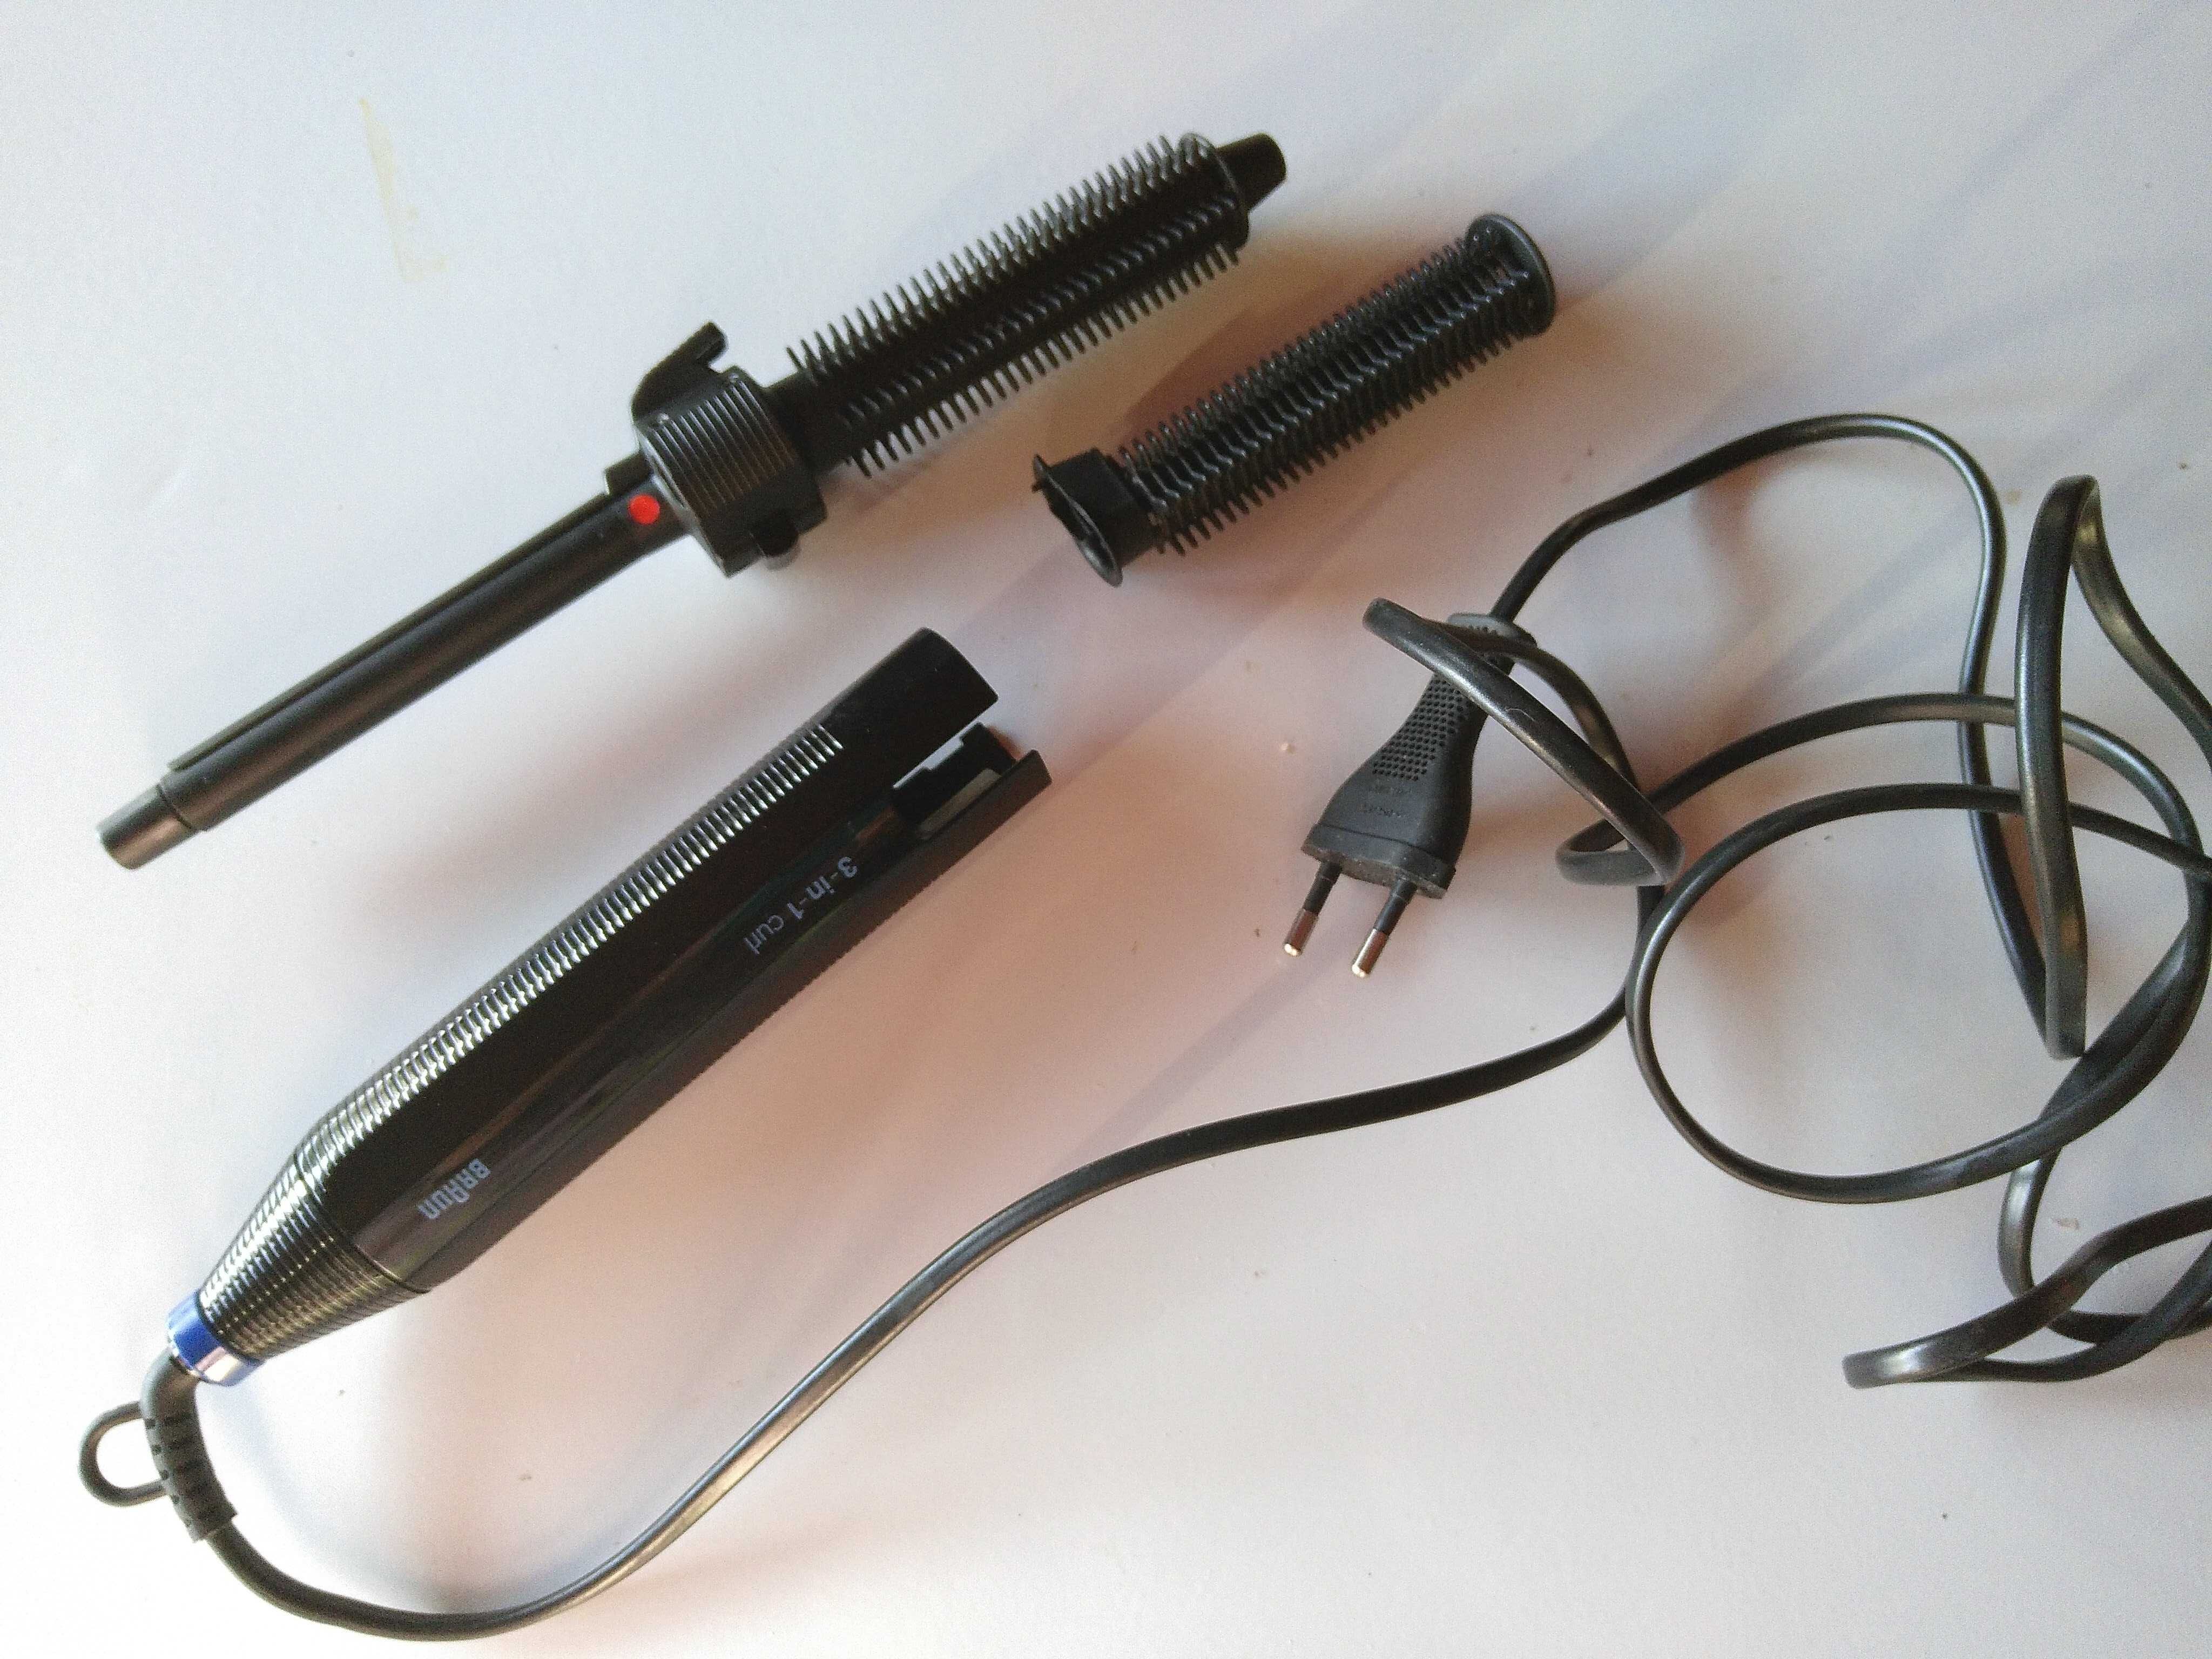 Modelador de cabelo Braun styler 3 em 1 - combina 3 aparelhos num só